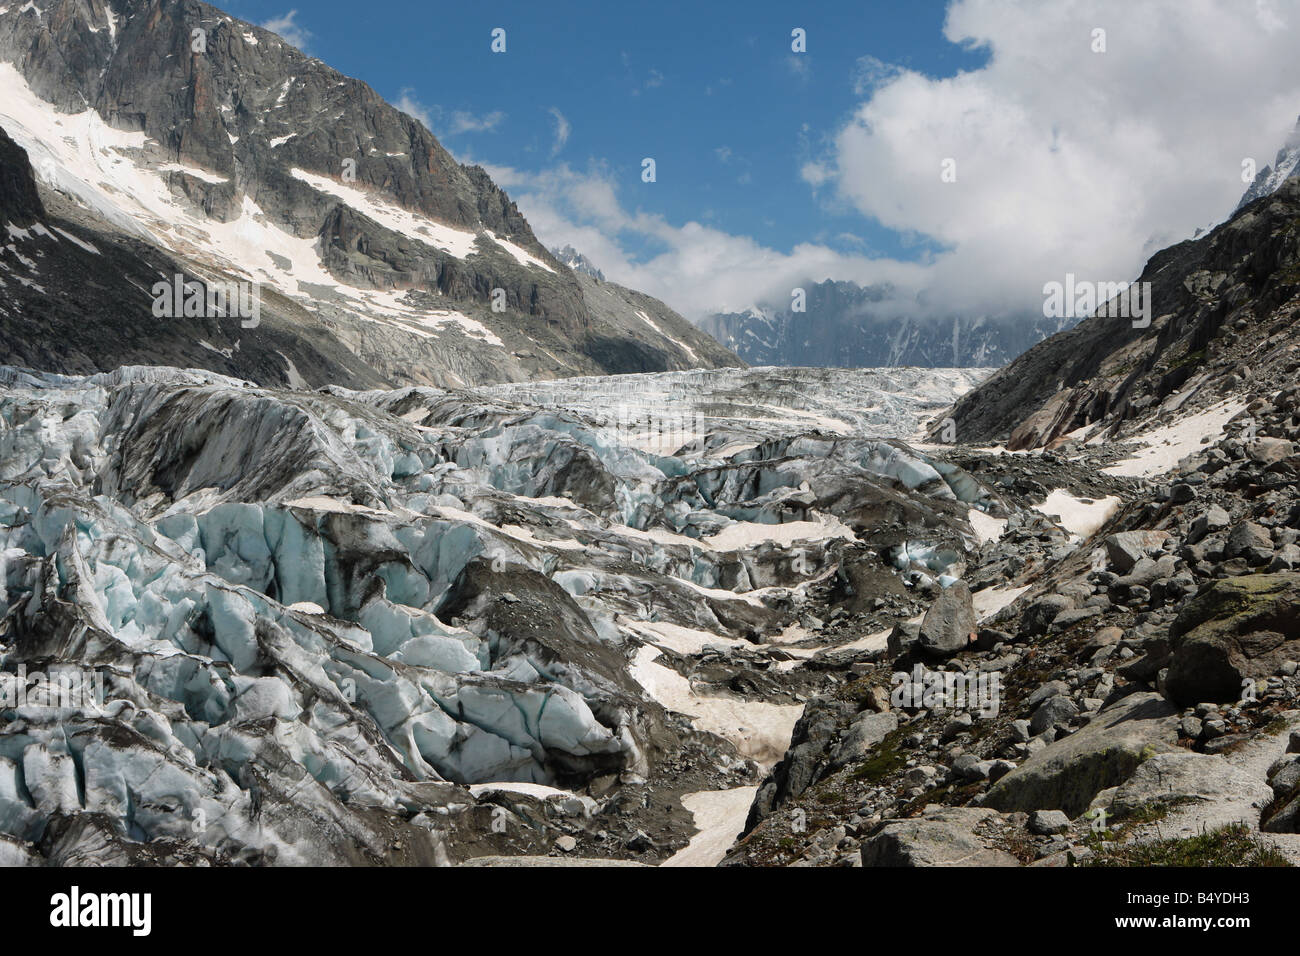 Une vue sur le glacier d'Argentière dans la vallée de Chamonix, prises à partir de la moraine latérale en été Banque D'Images